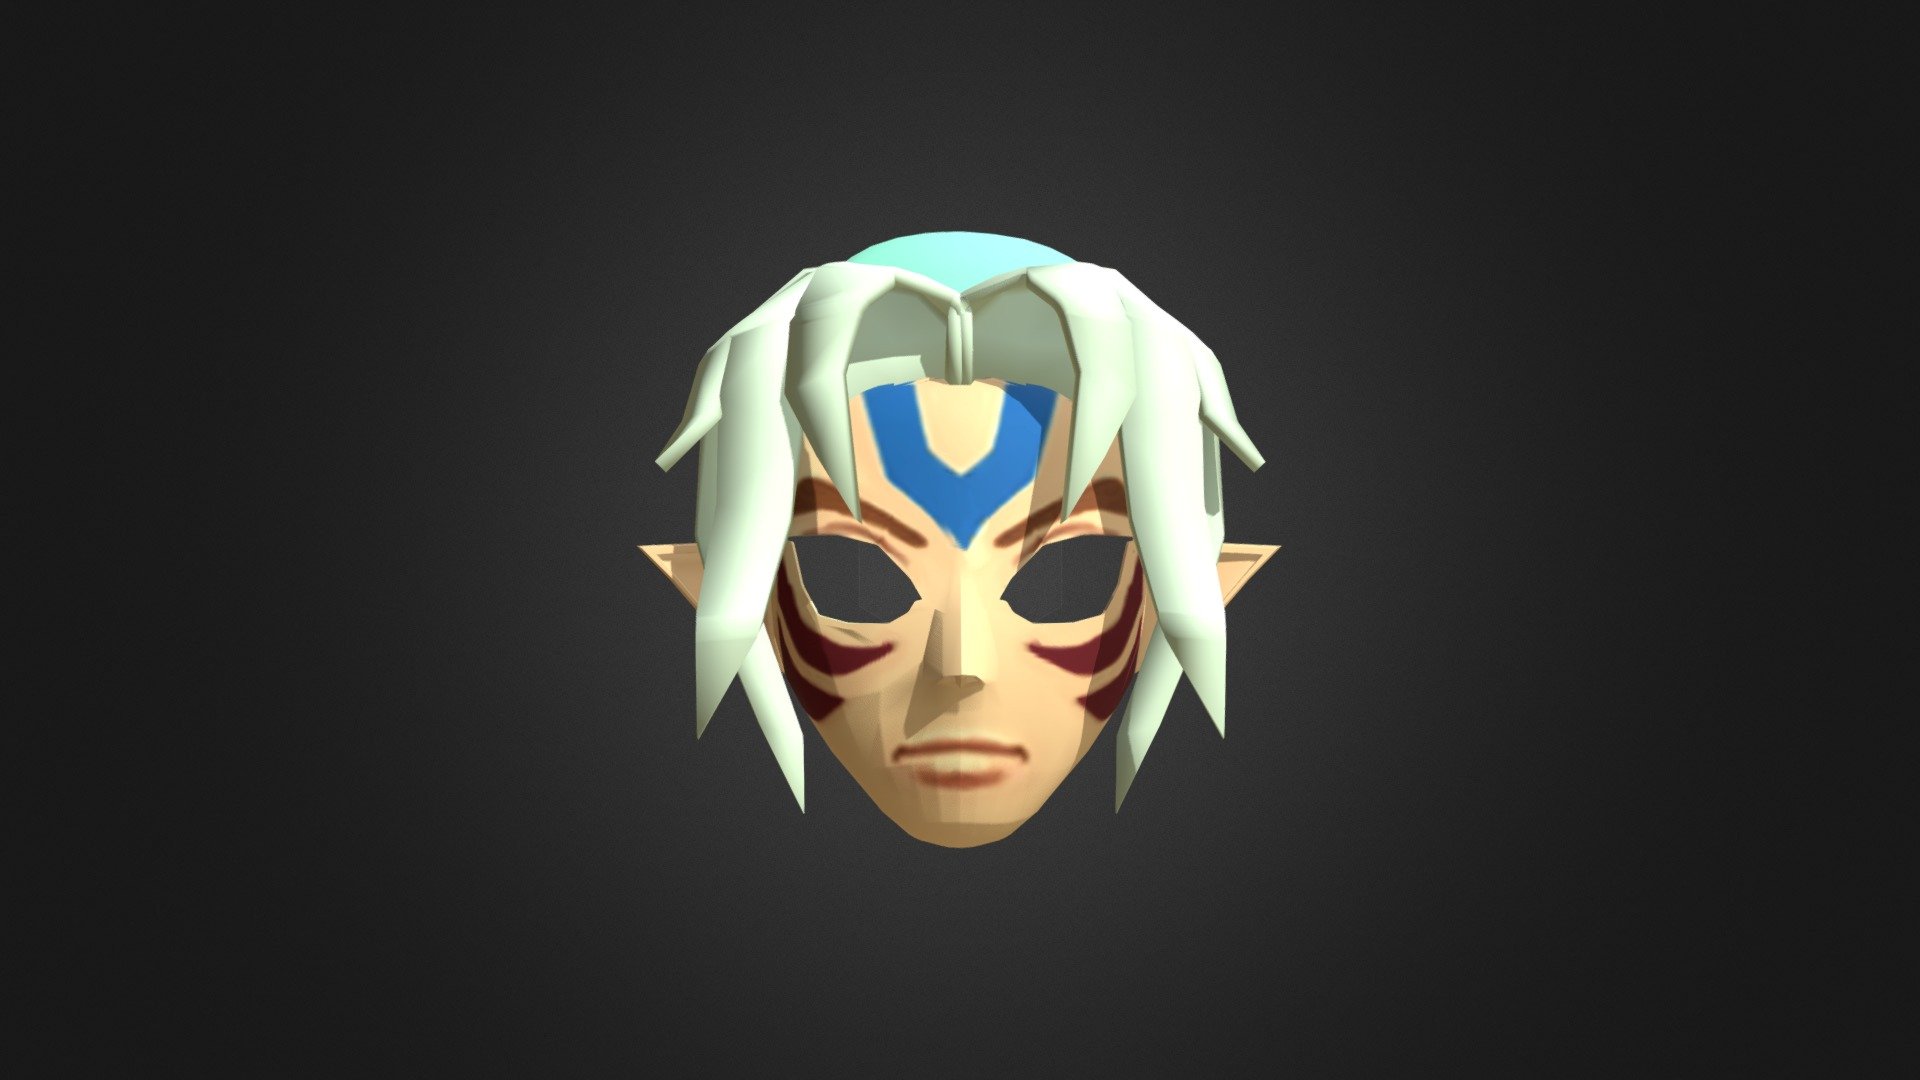 N64 Zelda Majora's Mask Fierce Deity Mask - N64 Link Fierce Deity Mask - Buy Royalty Free 3D model by nohero (@nohero.) 3d model